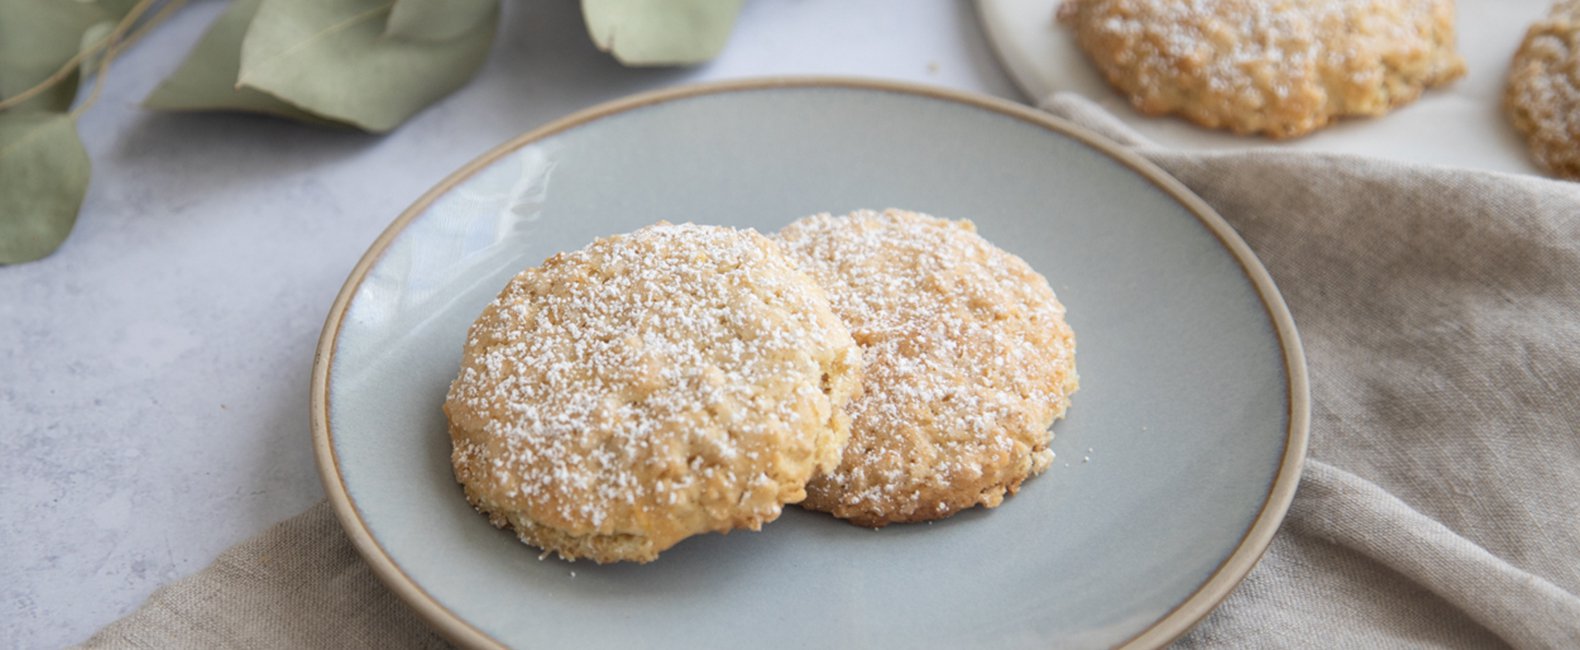 Lemon Oatmeal Cookies Recipe | Quaker Oats